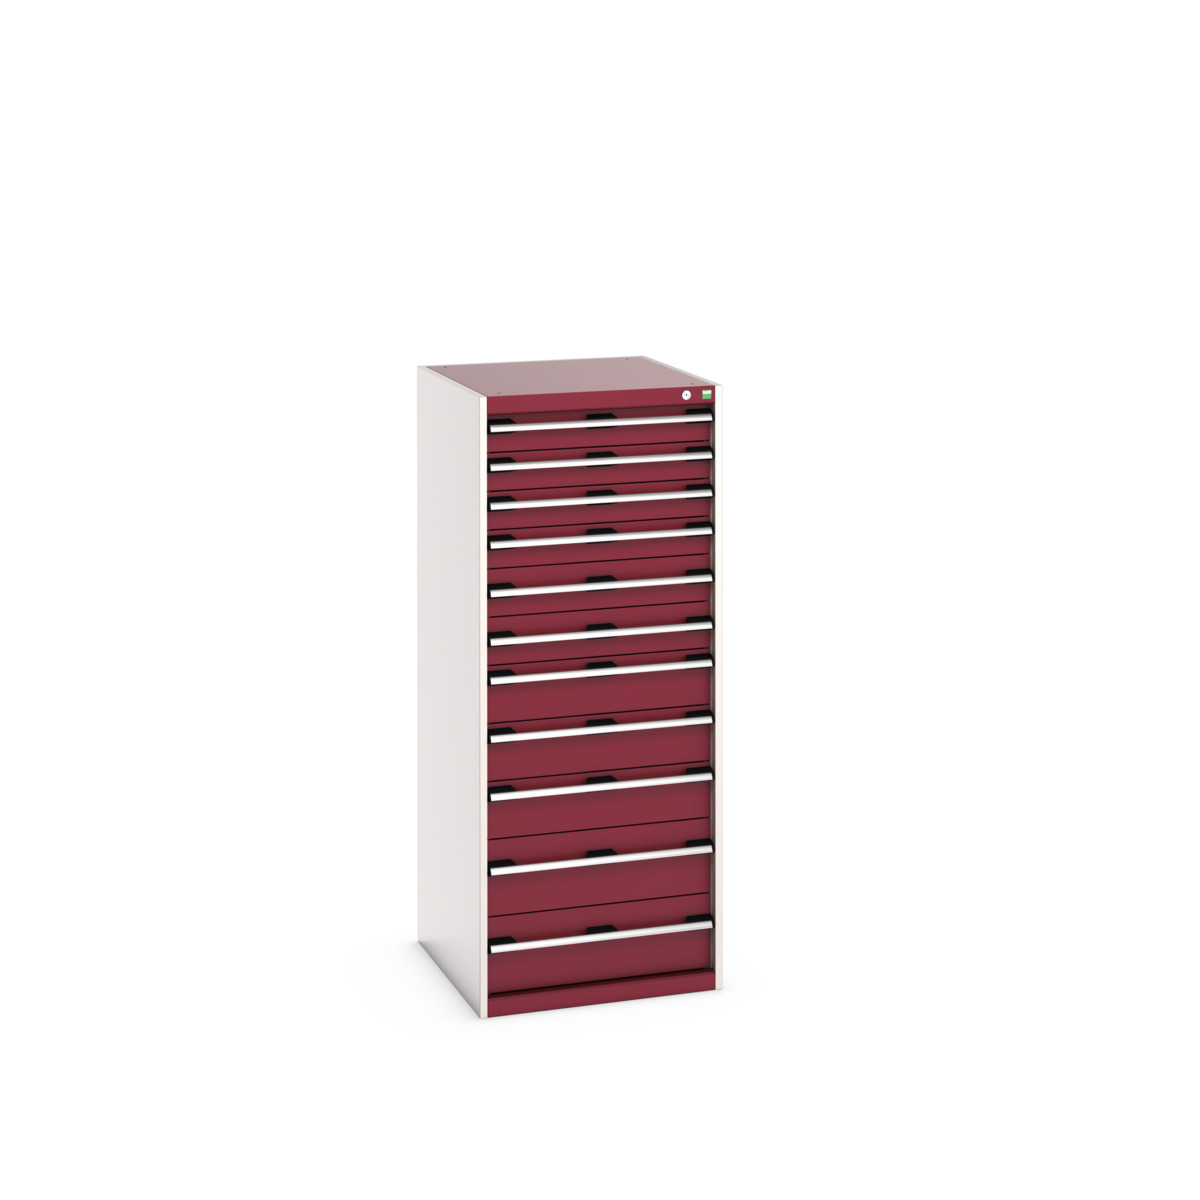 40027047.24V - cubio drawer cabinet